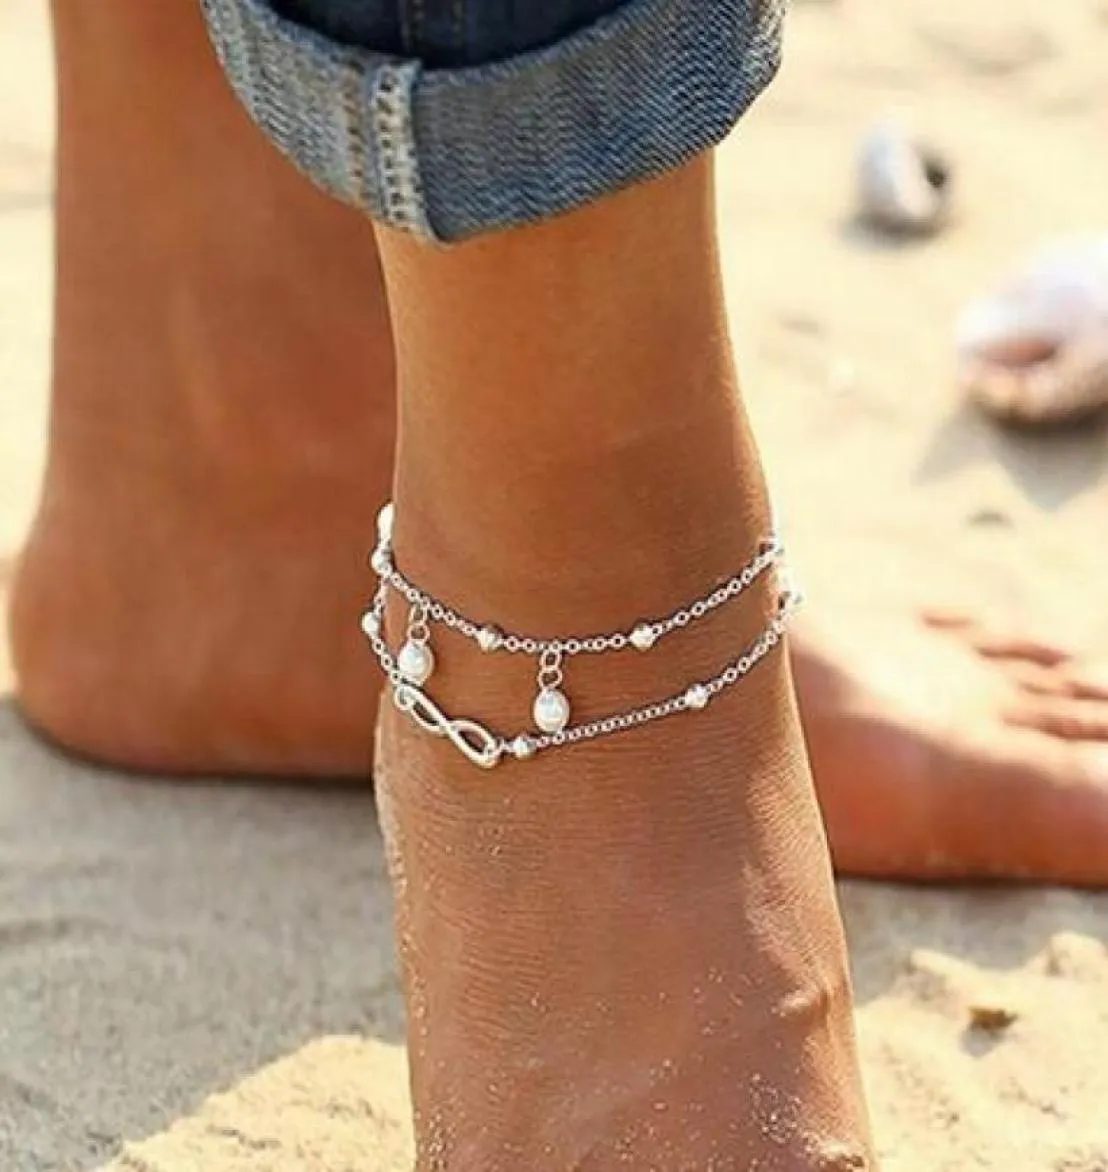 Meetcute Bracelet de cheville en cristal numéro bracelets de cheville couleur argent lien chaîne Bracelet sur la jambe pour les femmes plage portant des bijoux de pied5865440